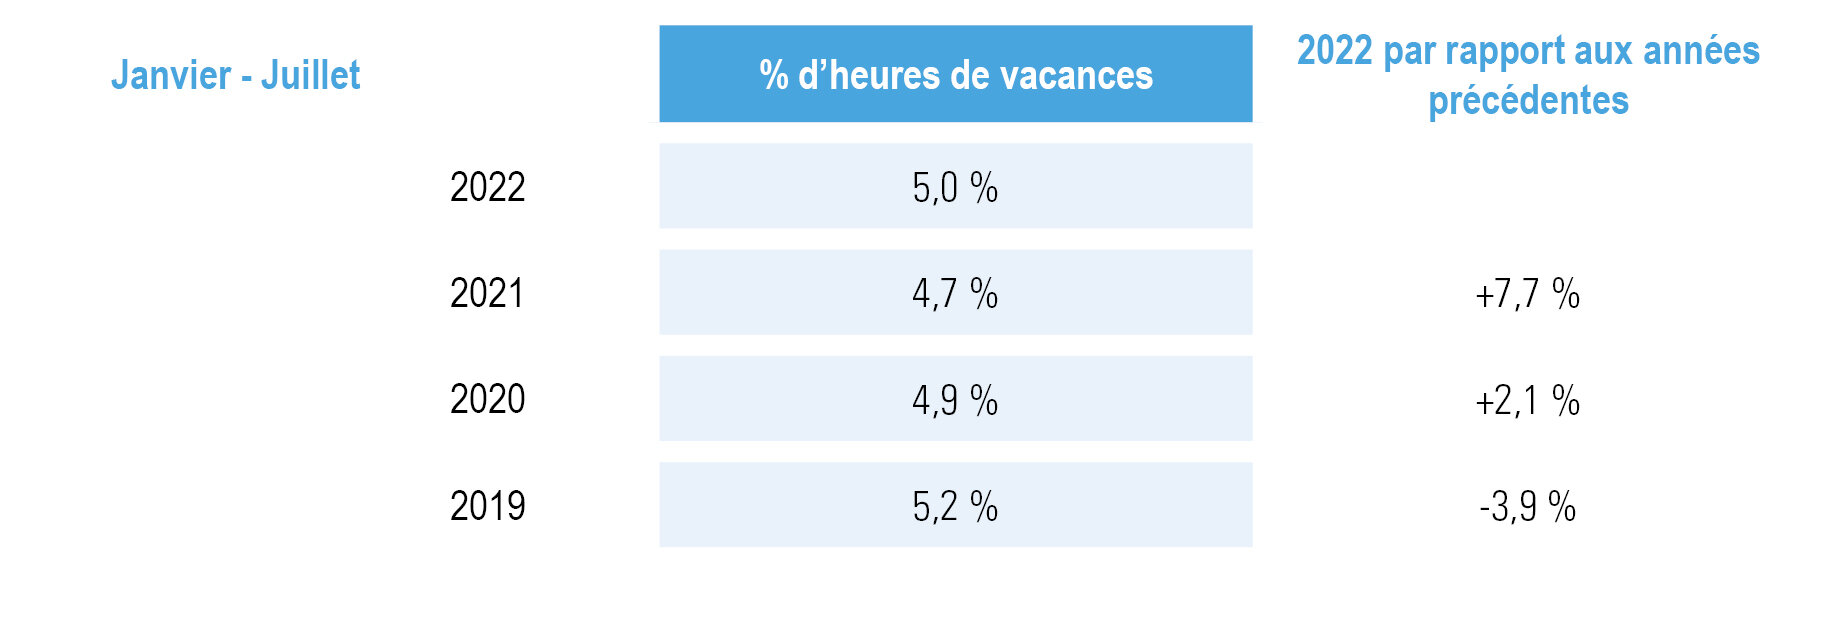 part des vacances en % des heures ouvrables pour janvier-juillet 2022 + par rapport à 2019, 2020 et 2021